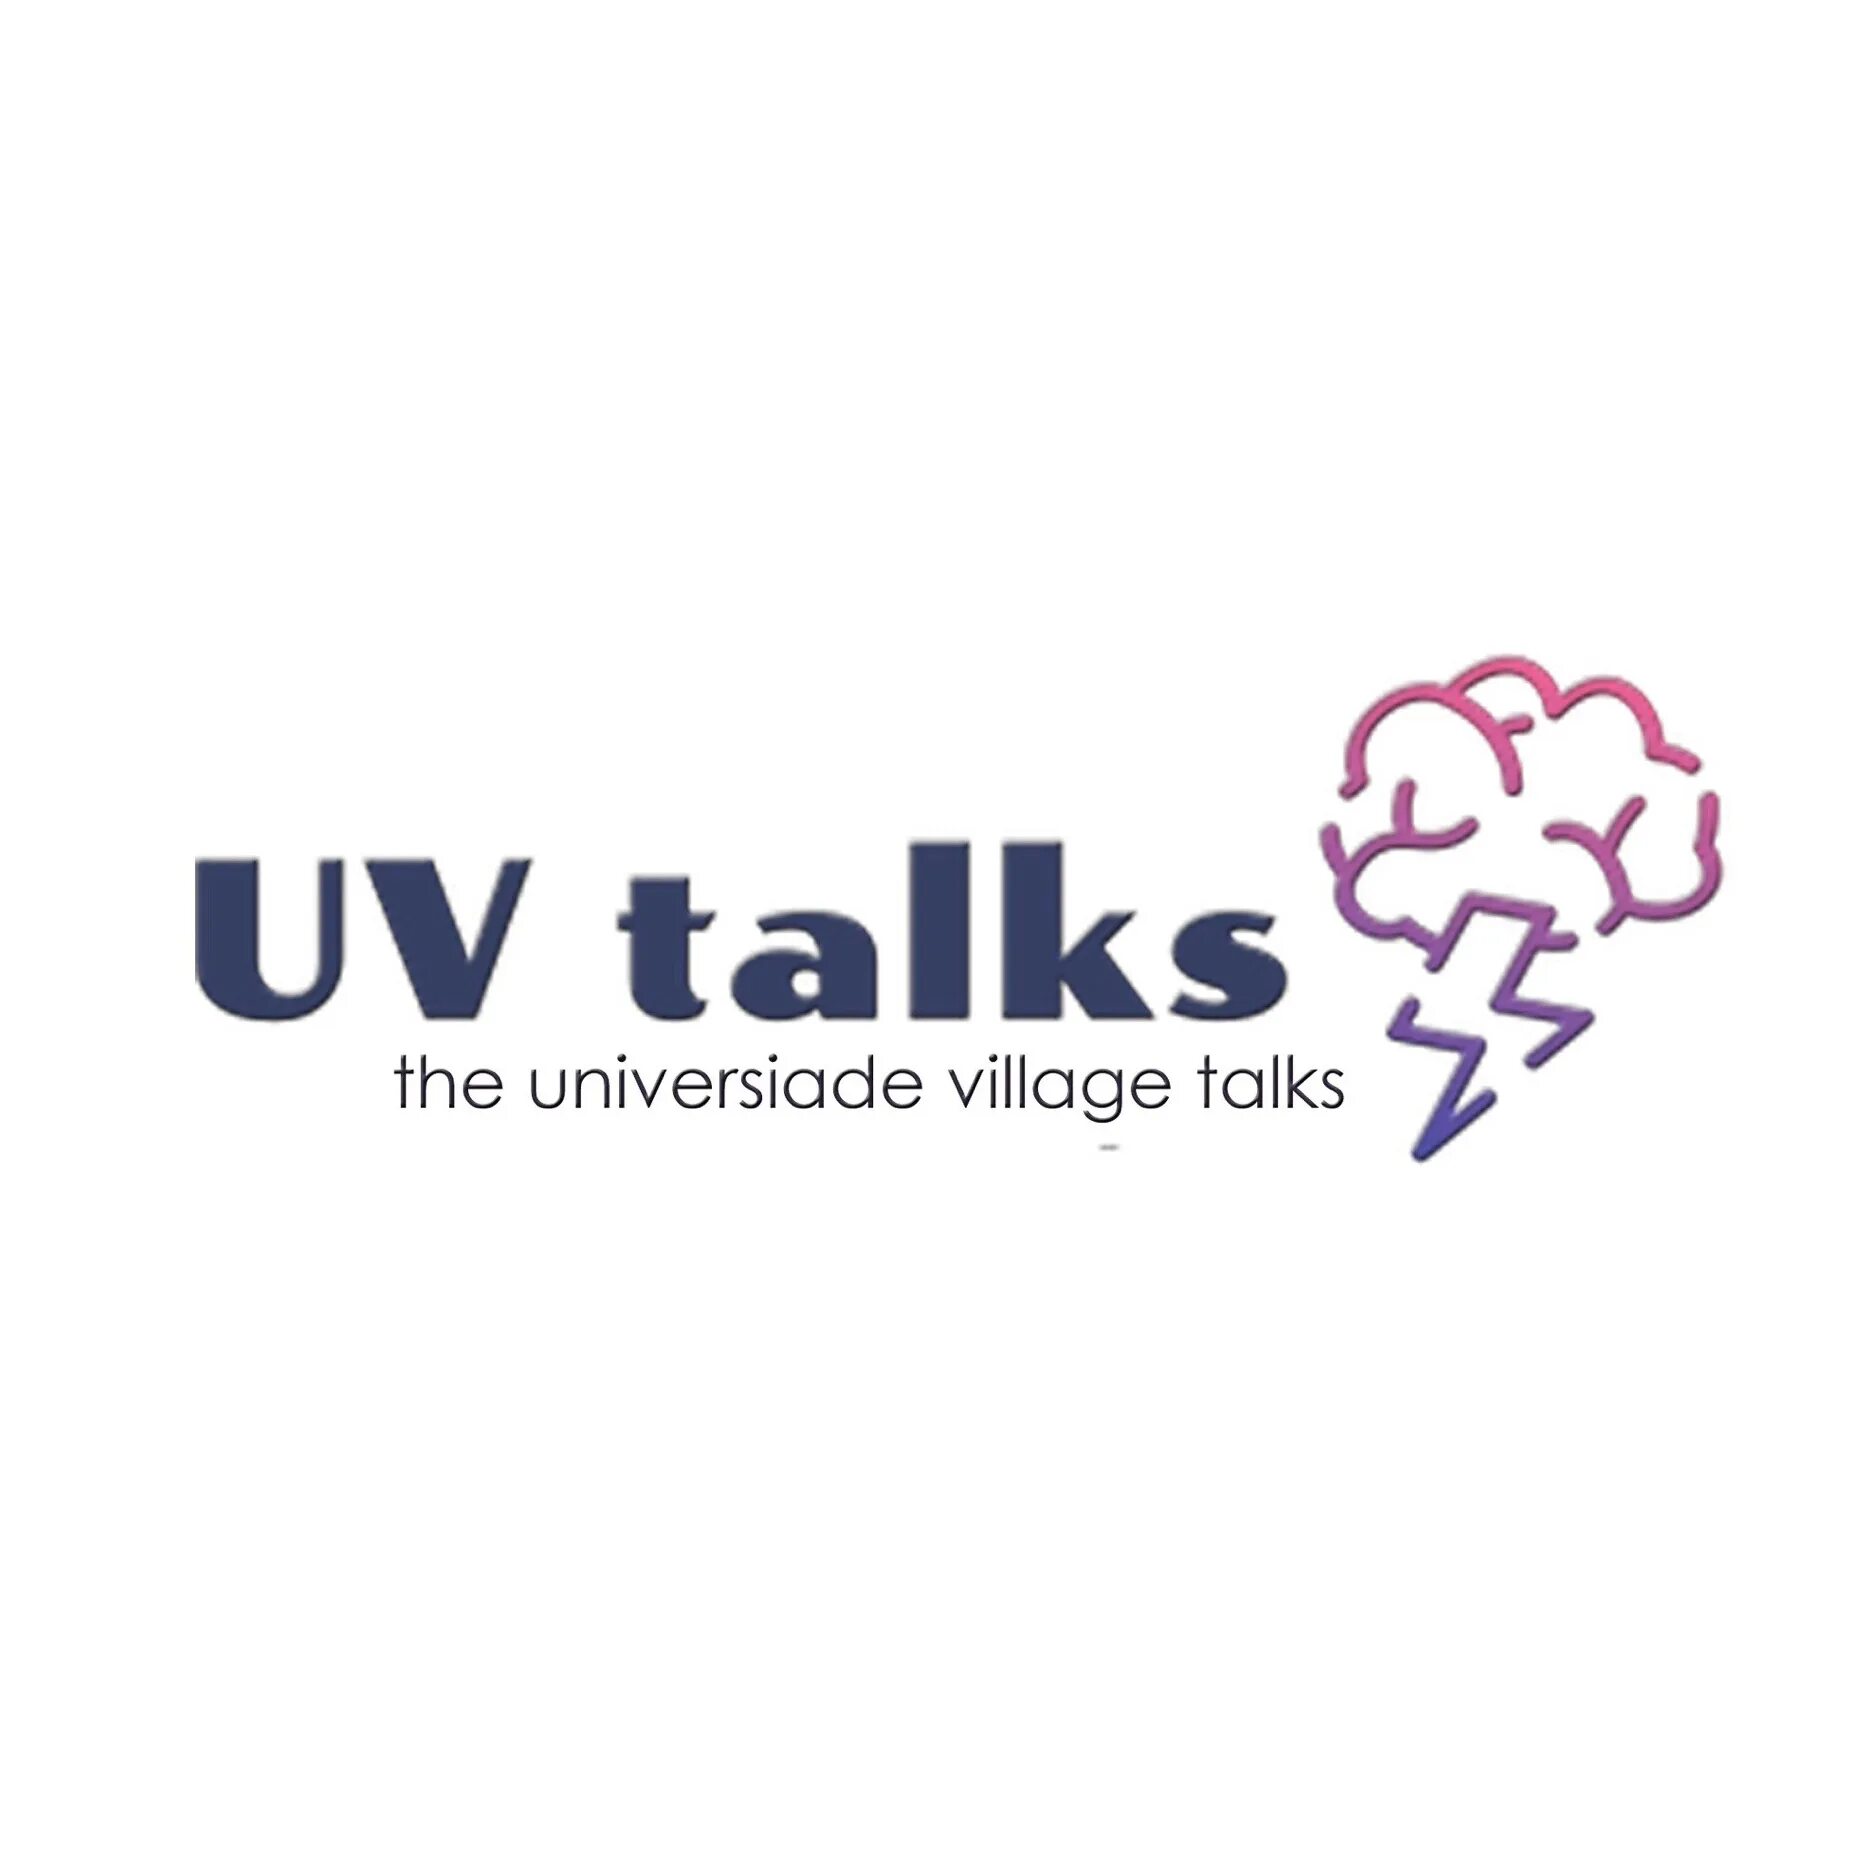 UV talks. Vk talk